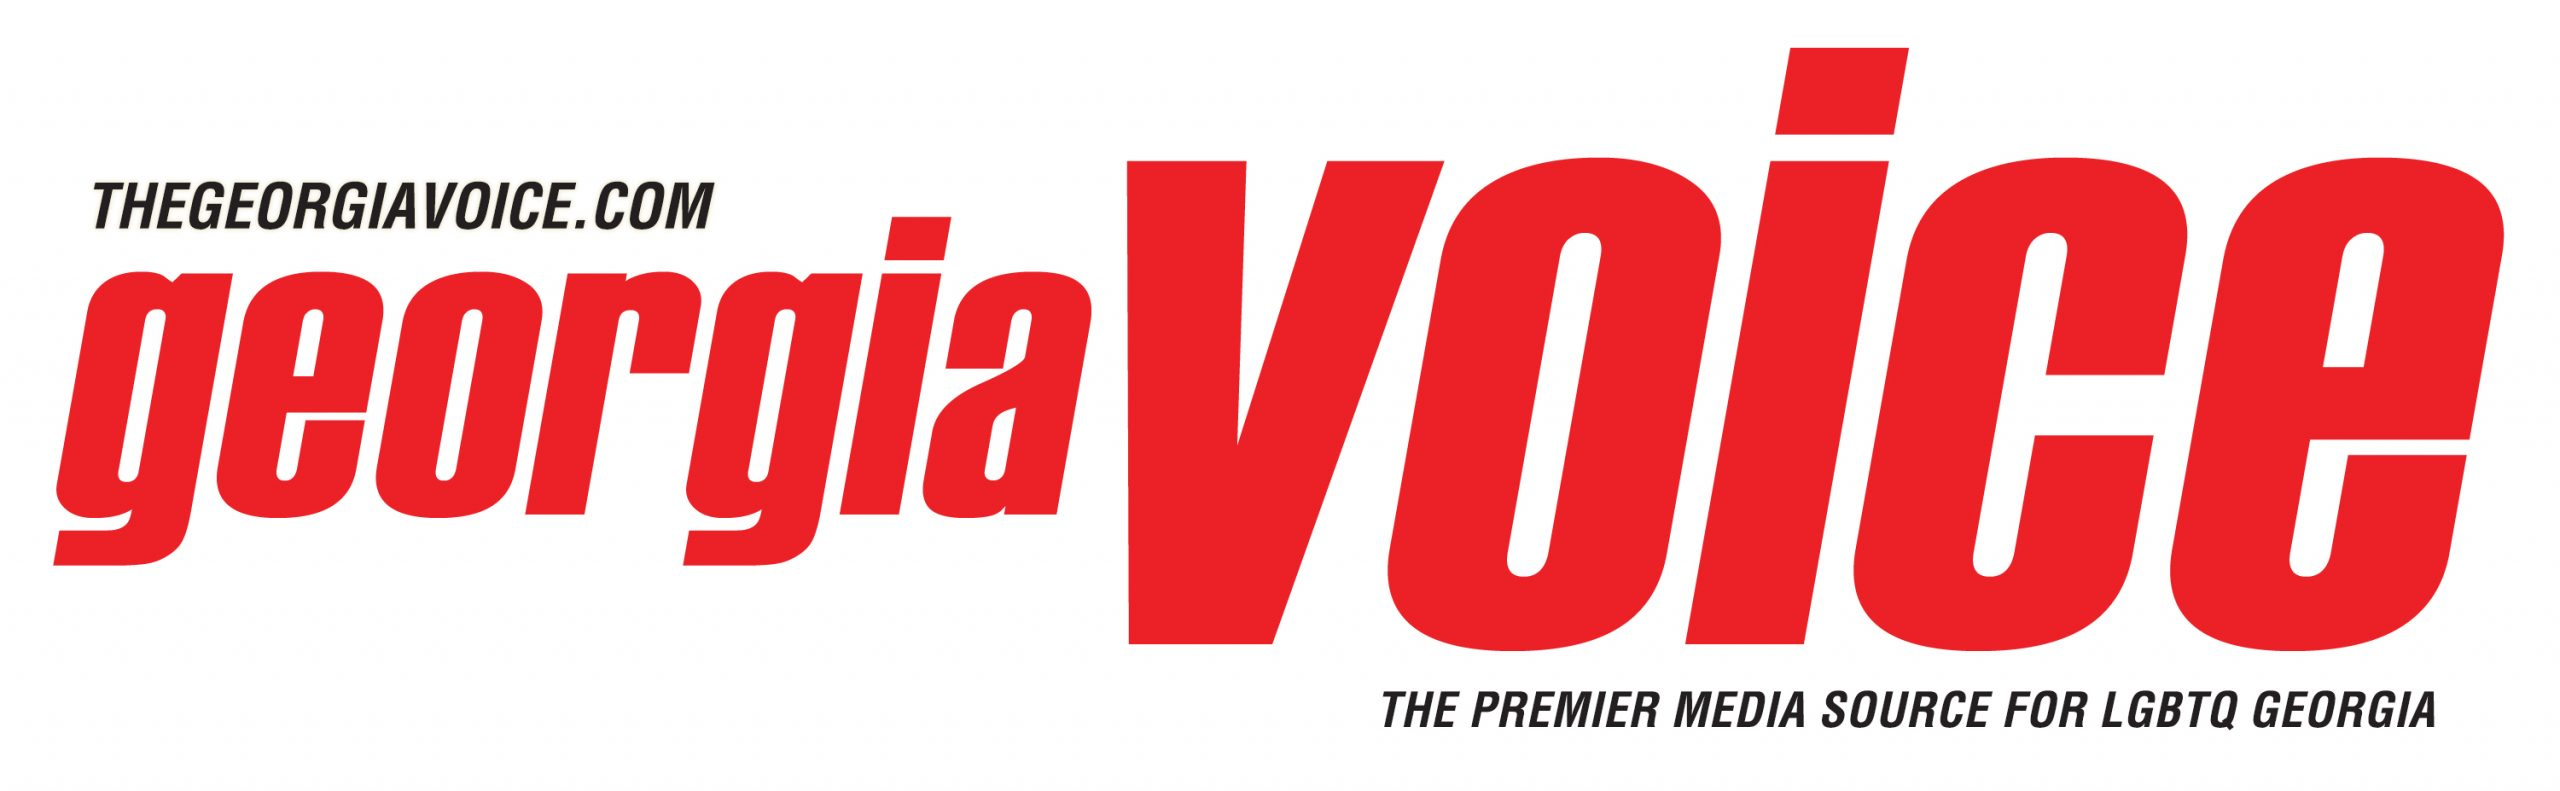 Georgia Voice logo